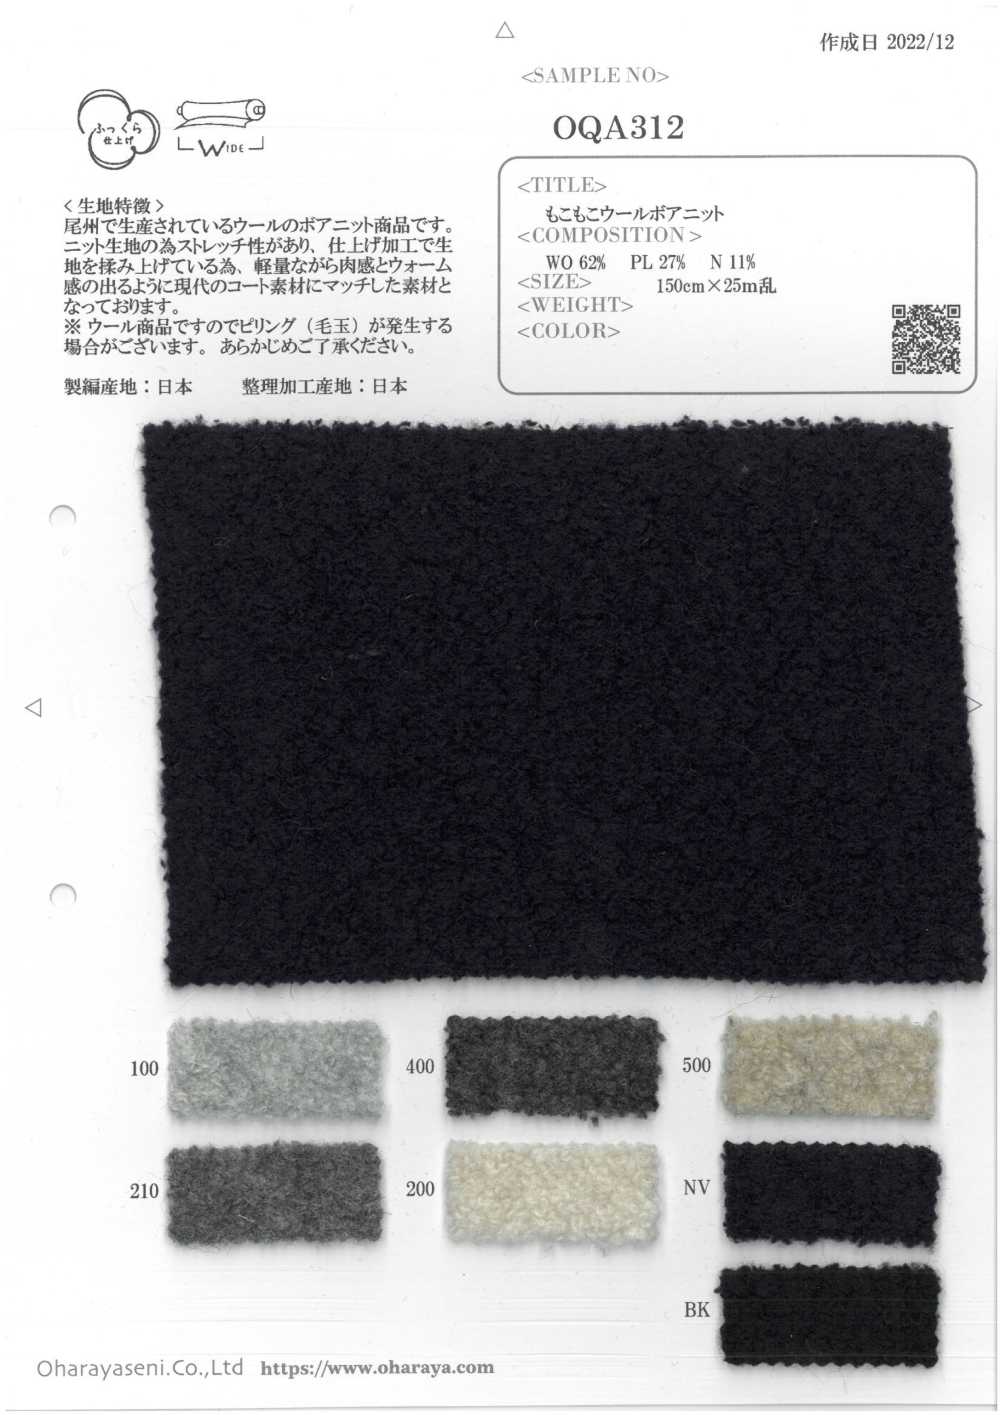 OQA312 Malha Boa De Lã Fofa[Têxtil / Tecido] Oharayaseni